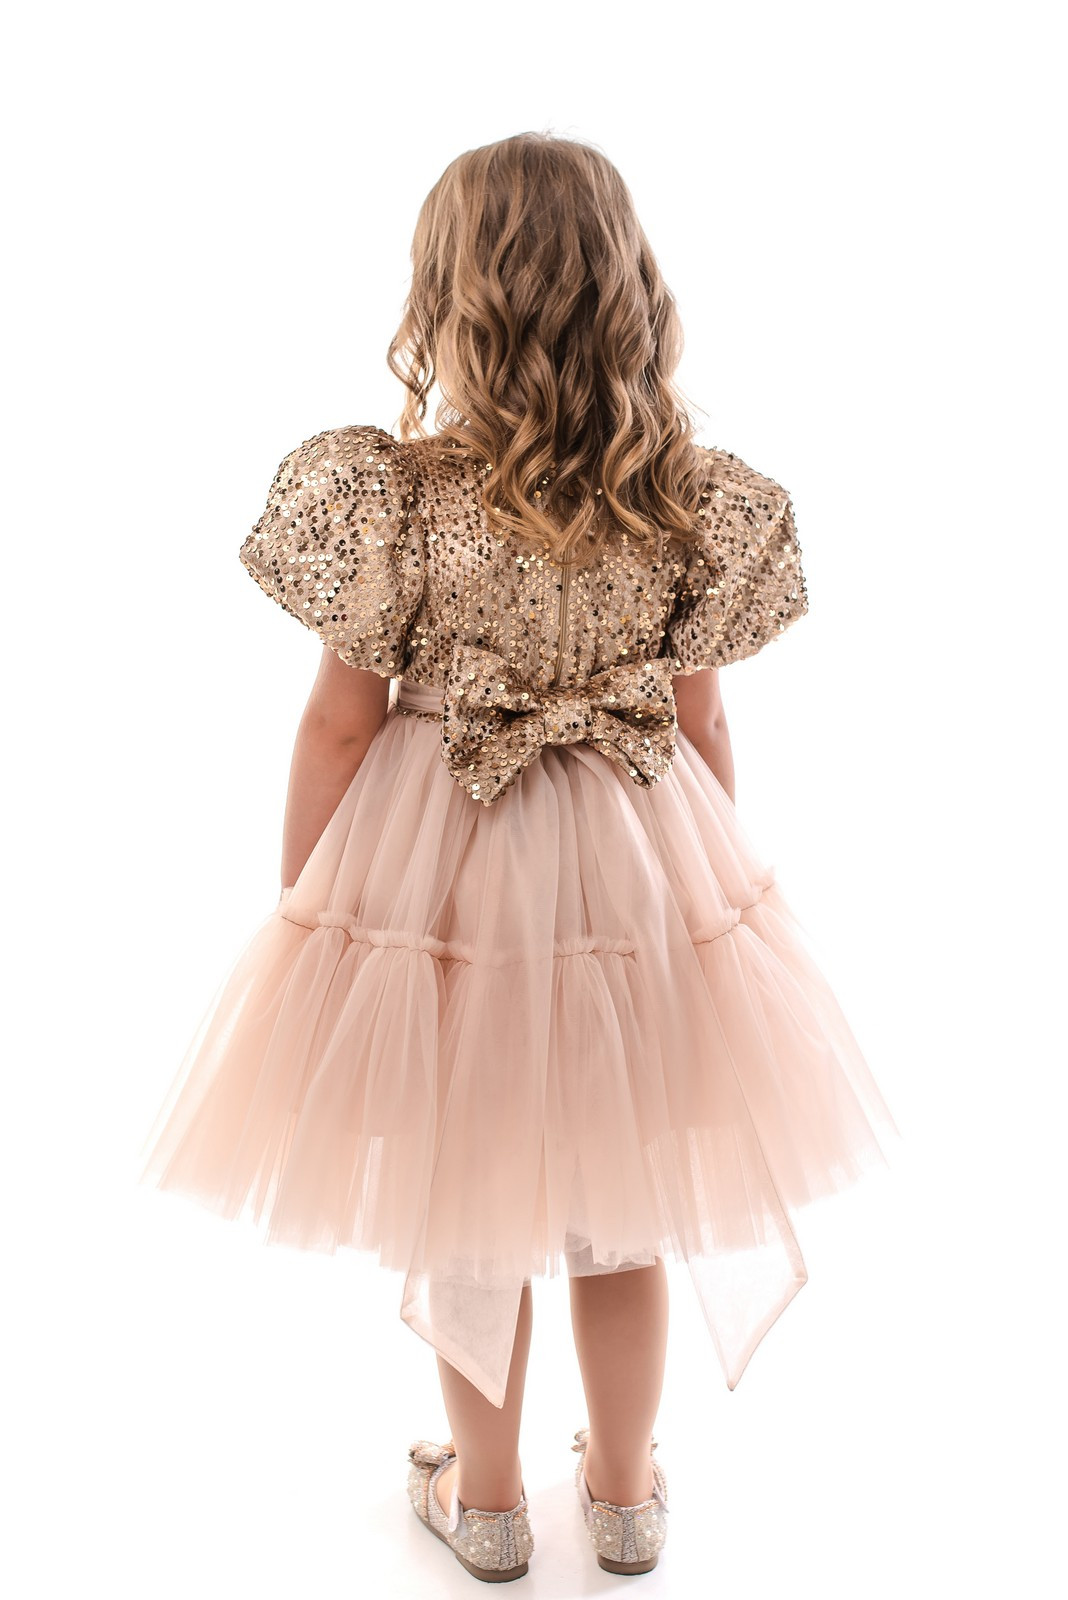 Dress Blythe, photo №2